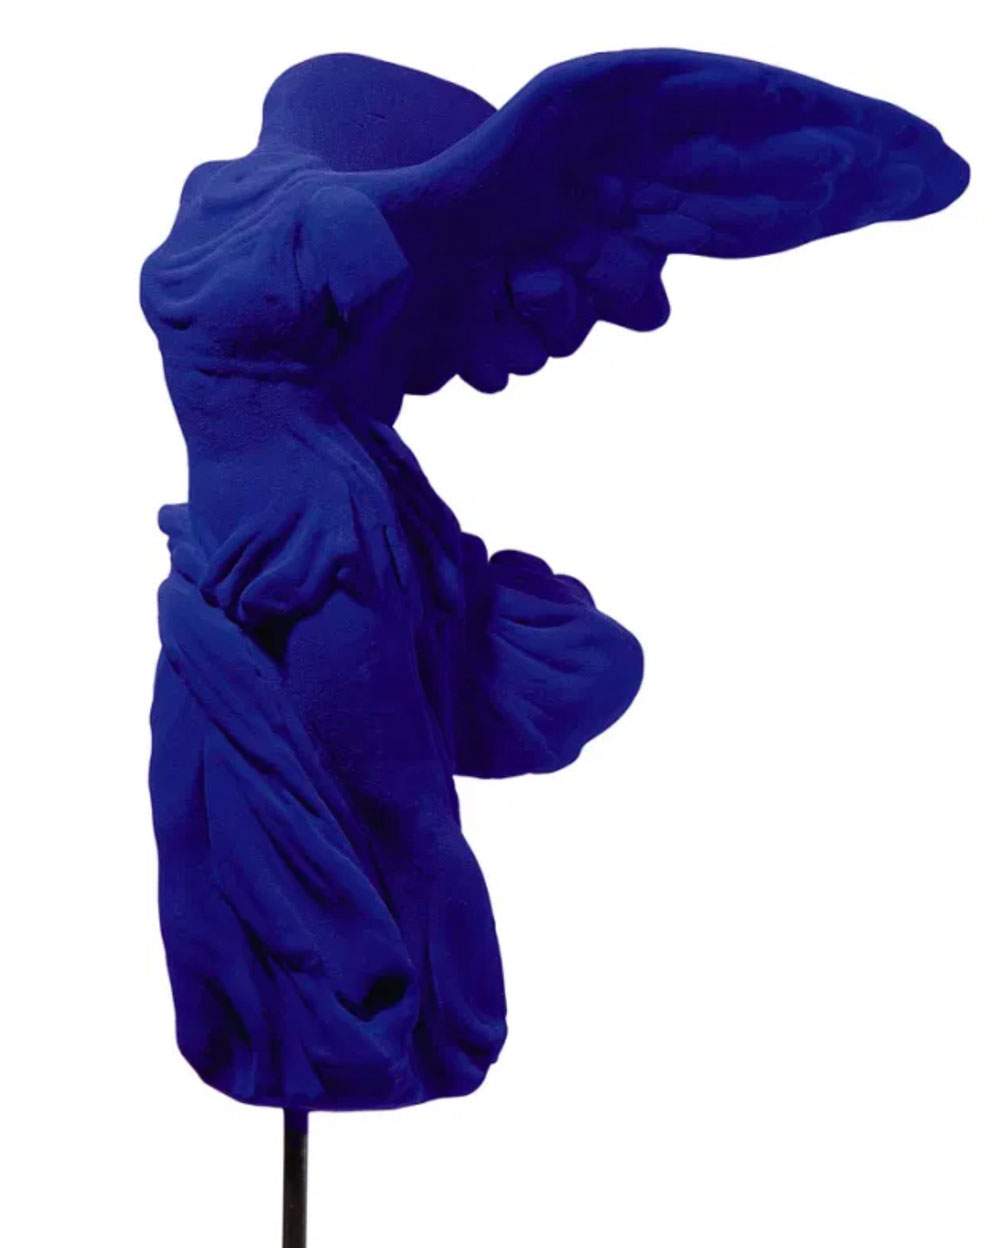 Il n'y a pas qu'Yves Klein : le musée Villa Croce de Gênes s'habille de bleu avec cinq expositions